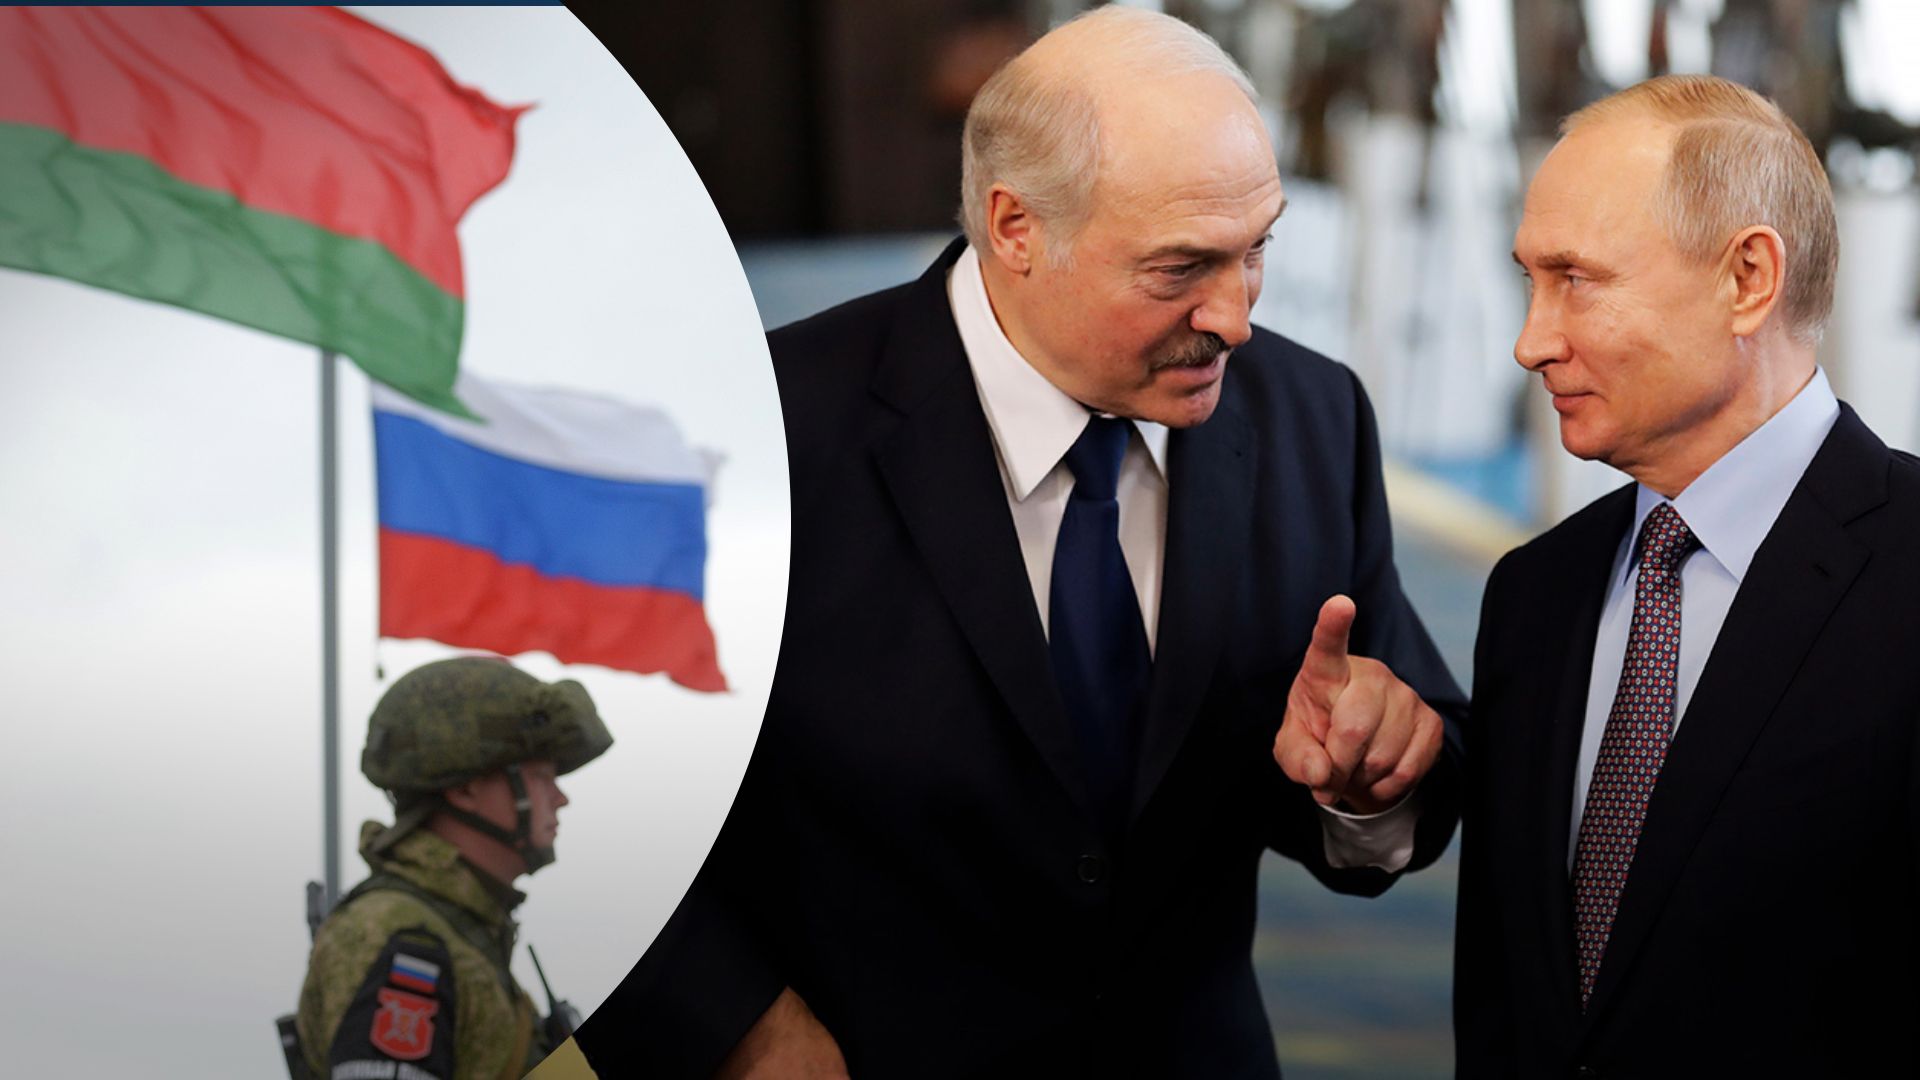 Визит Путина в Лукашенко 19 декабря 2022 года - что он может означать и чего ожидать